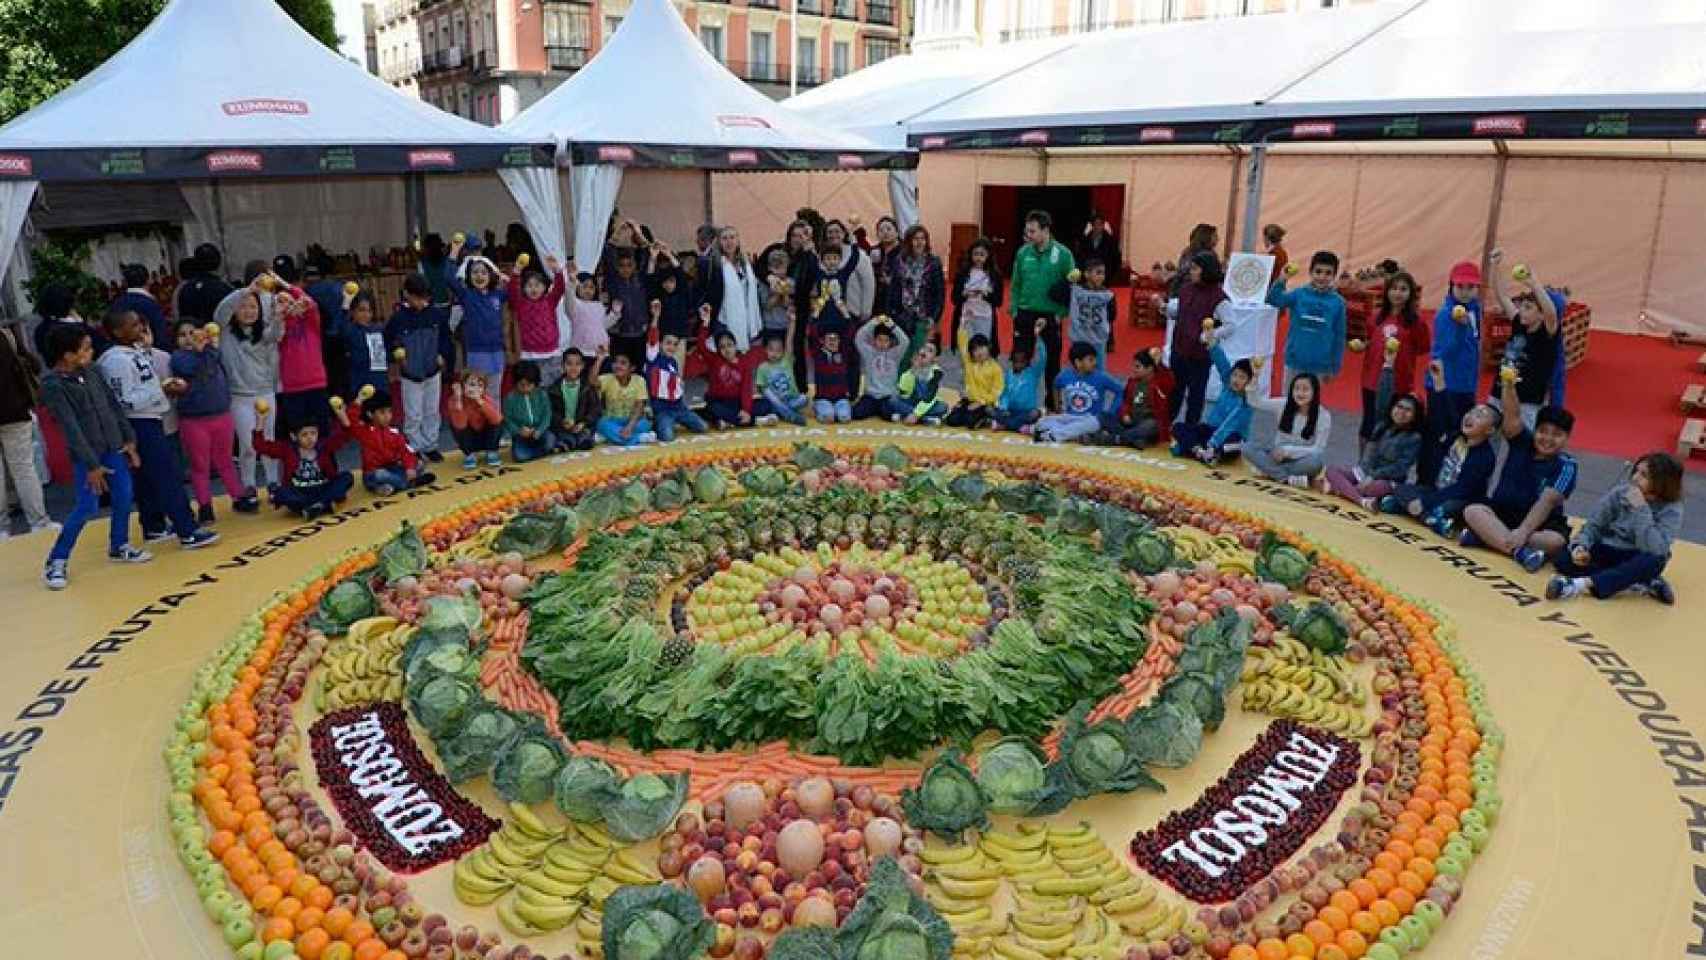 Mandala gigante creado con 1.825 frutas y verduras por 60 niños este lunes en Madrid.